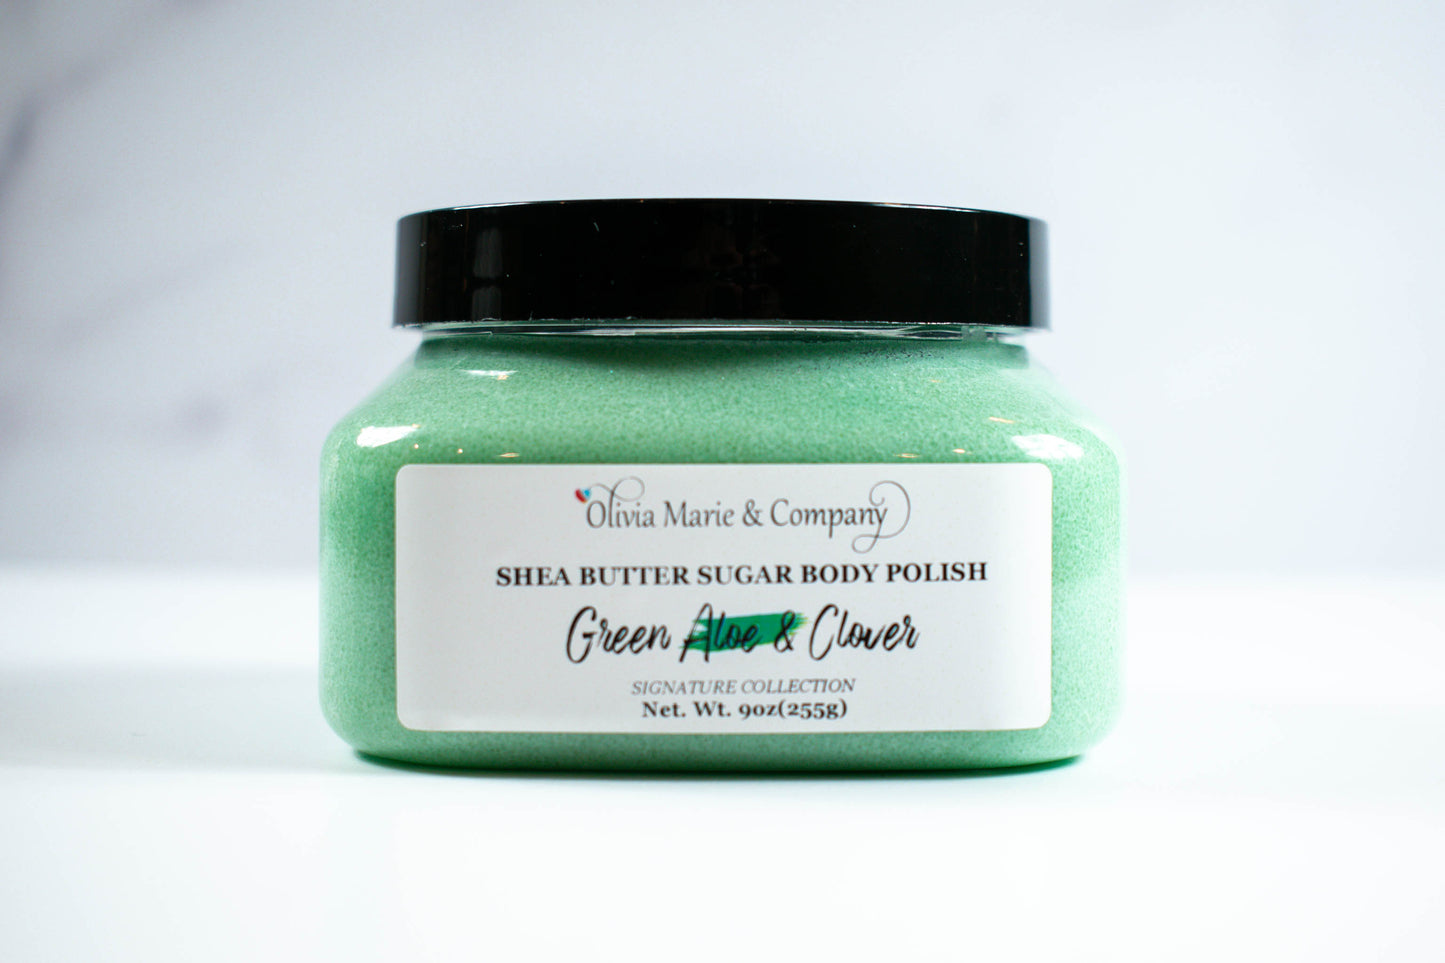 Green Aloe & Clover Sugar Body Polish